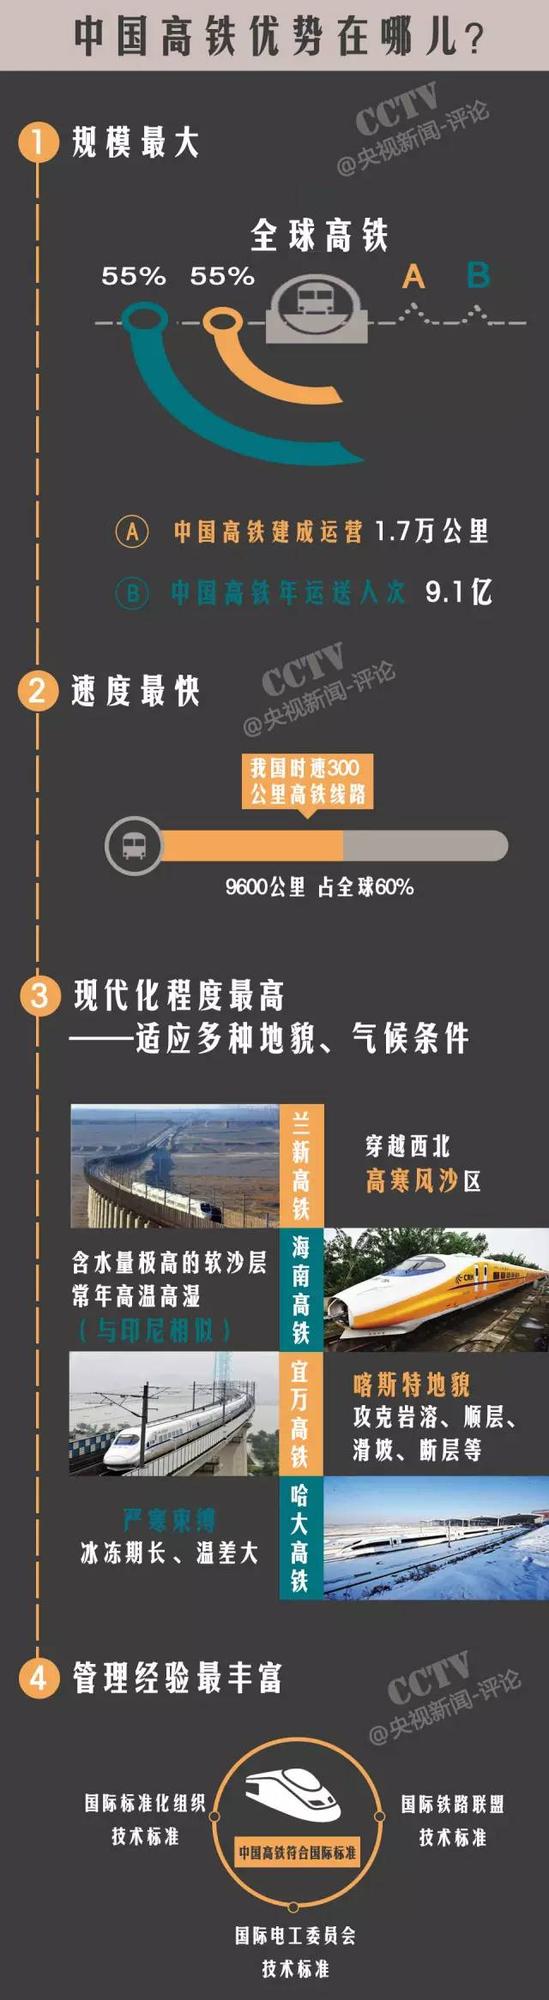 在今年6月份，有中国中铁二院参与投标的俄罗斯首条高铁――莫斯科到喀山高铁的规划设计合同在圣彼得堡签署，这是中国高铁走出国门的第一单，随着这些项目的推进，相信中国高铁在海外的路将越走越广！